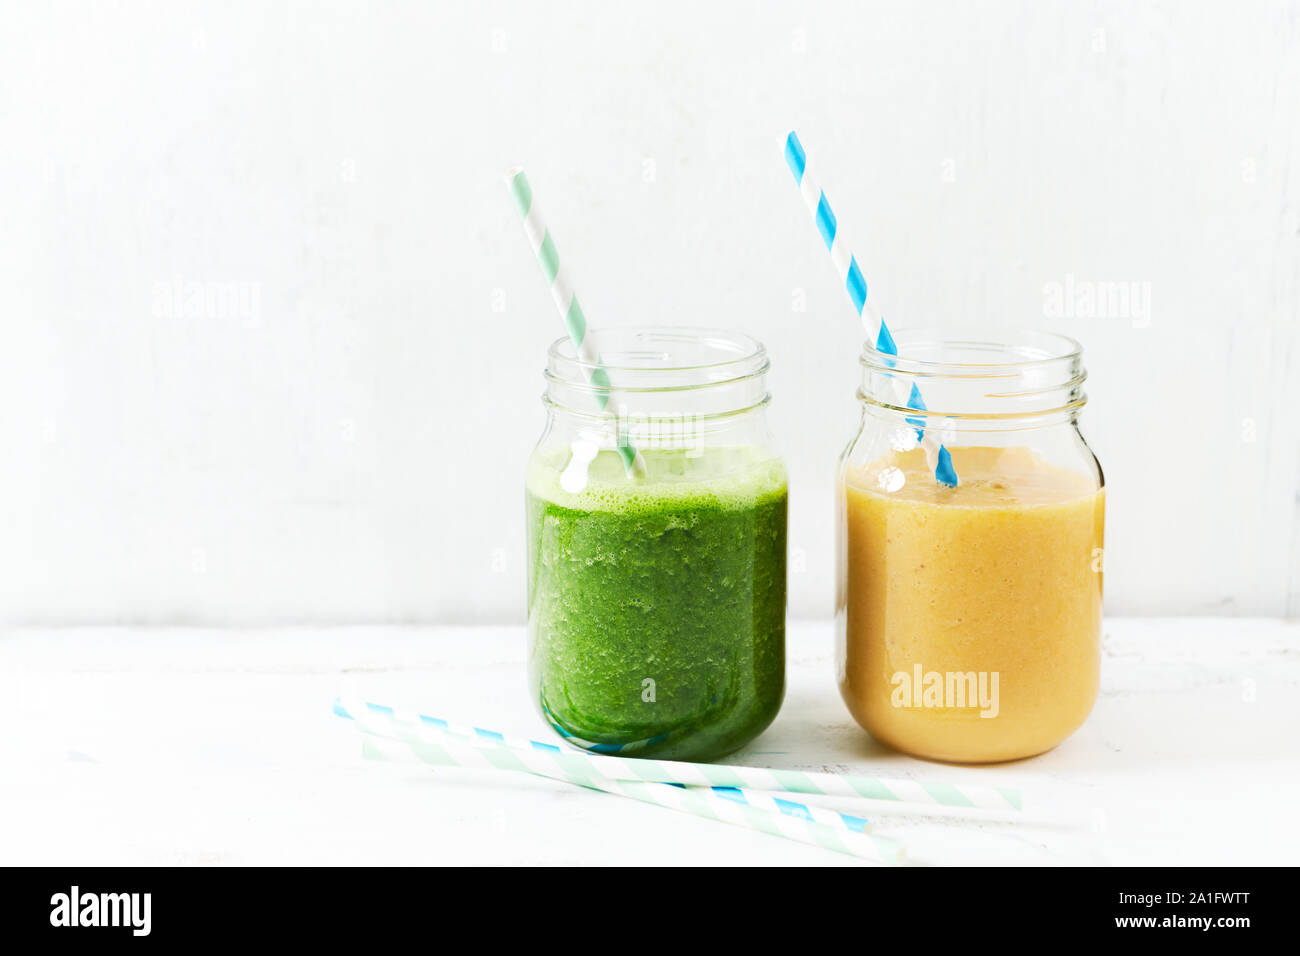 Banana-arancio e banana-kale smoothie in bicchieri. Immagine simbolica. Concetto di alimentazione sana. Sfondo bianco. Copia dello spazio. Foto Stock